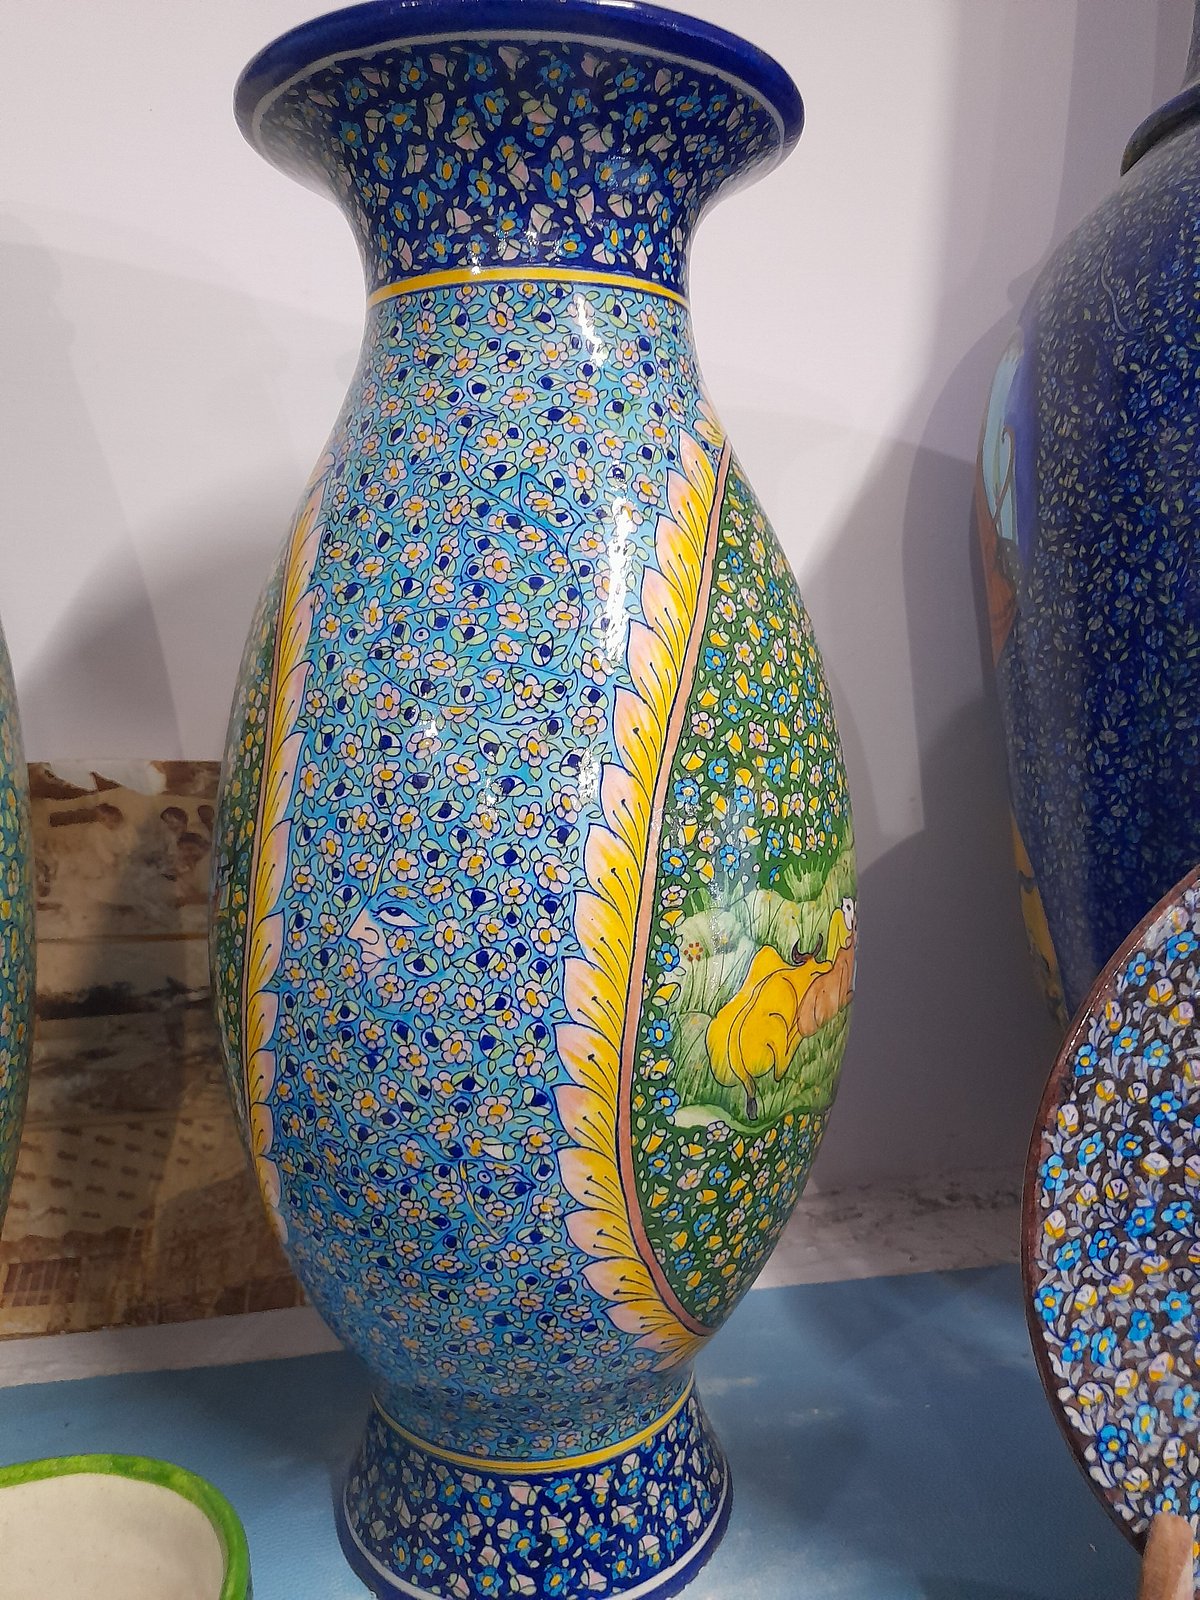 La ciencia de la porcelana china - Phoenix Art Museum